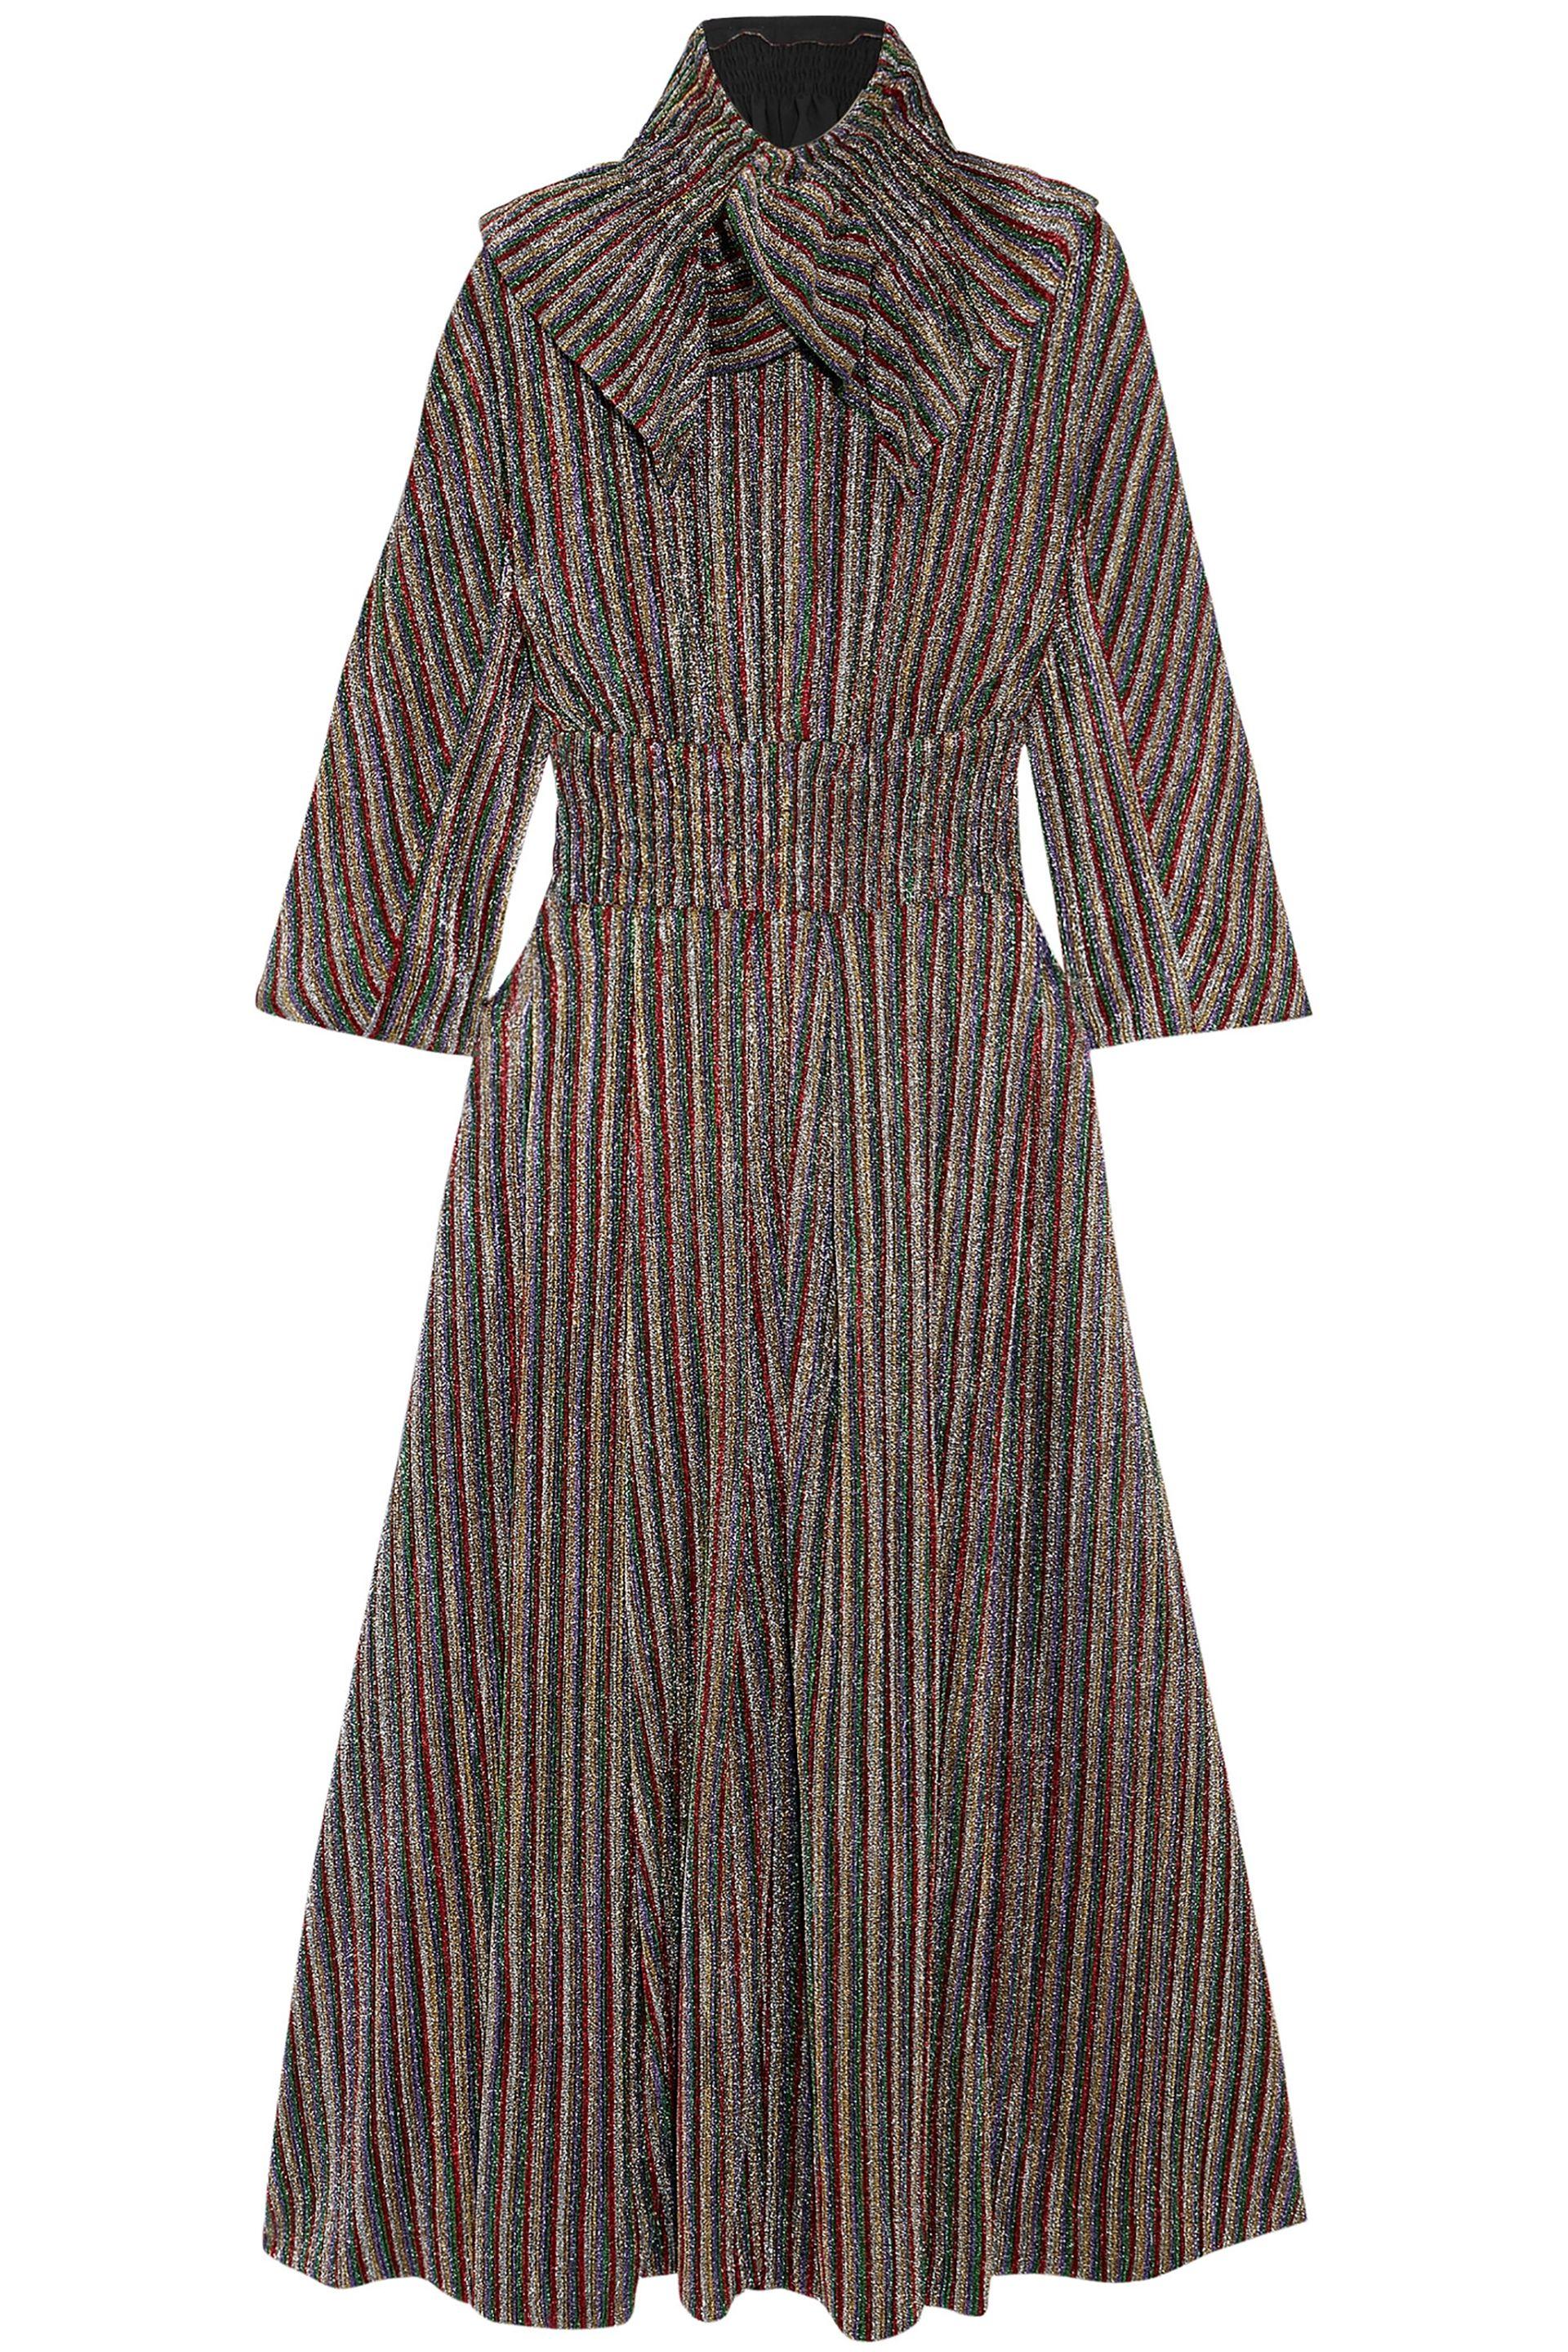 Lyst - Emilia Wickstead Woman Striped Metallic Ribbed-knit Midi Dress ...